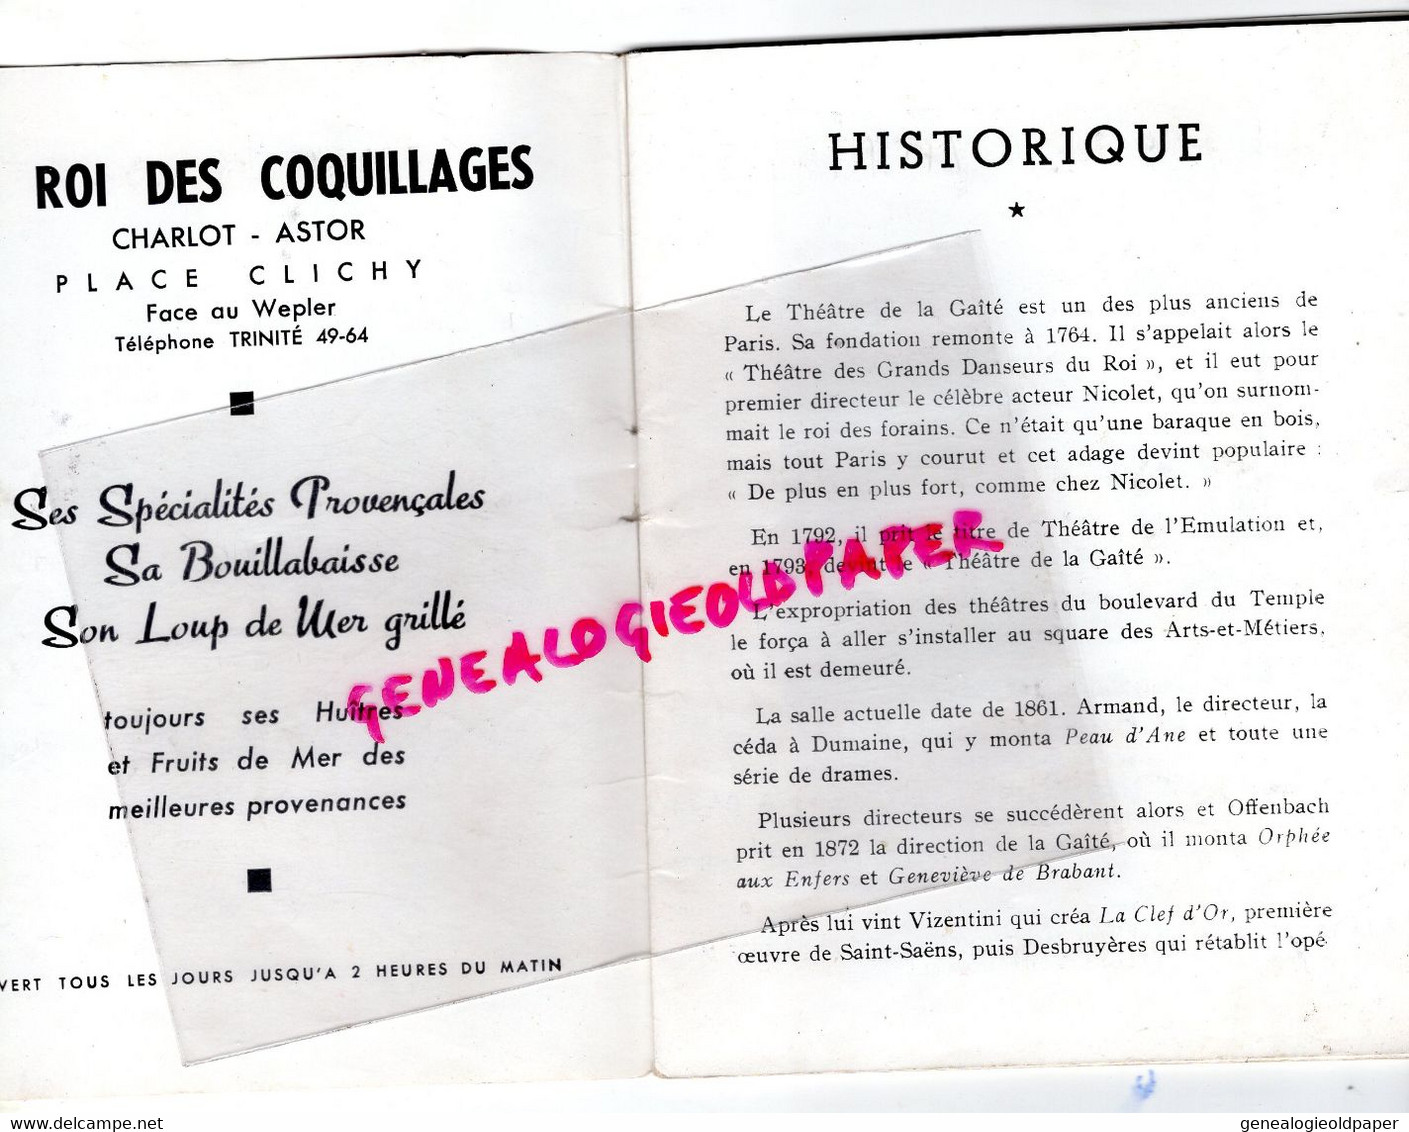 75- PARIS-  PROGRAMME THEATRE GAITE LYRIQUE-CHEVALIER DU CIEL-GERMAINE ROGER MONTJOYE-BOURTAYRE-PIERRE JACY-PAUL COLLINE - Programmes